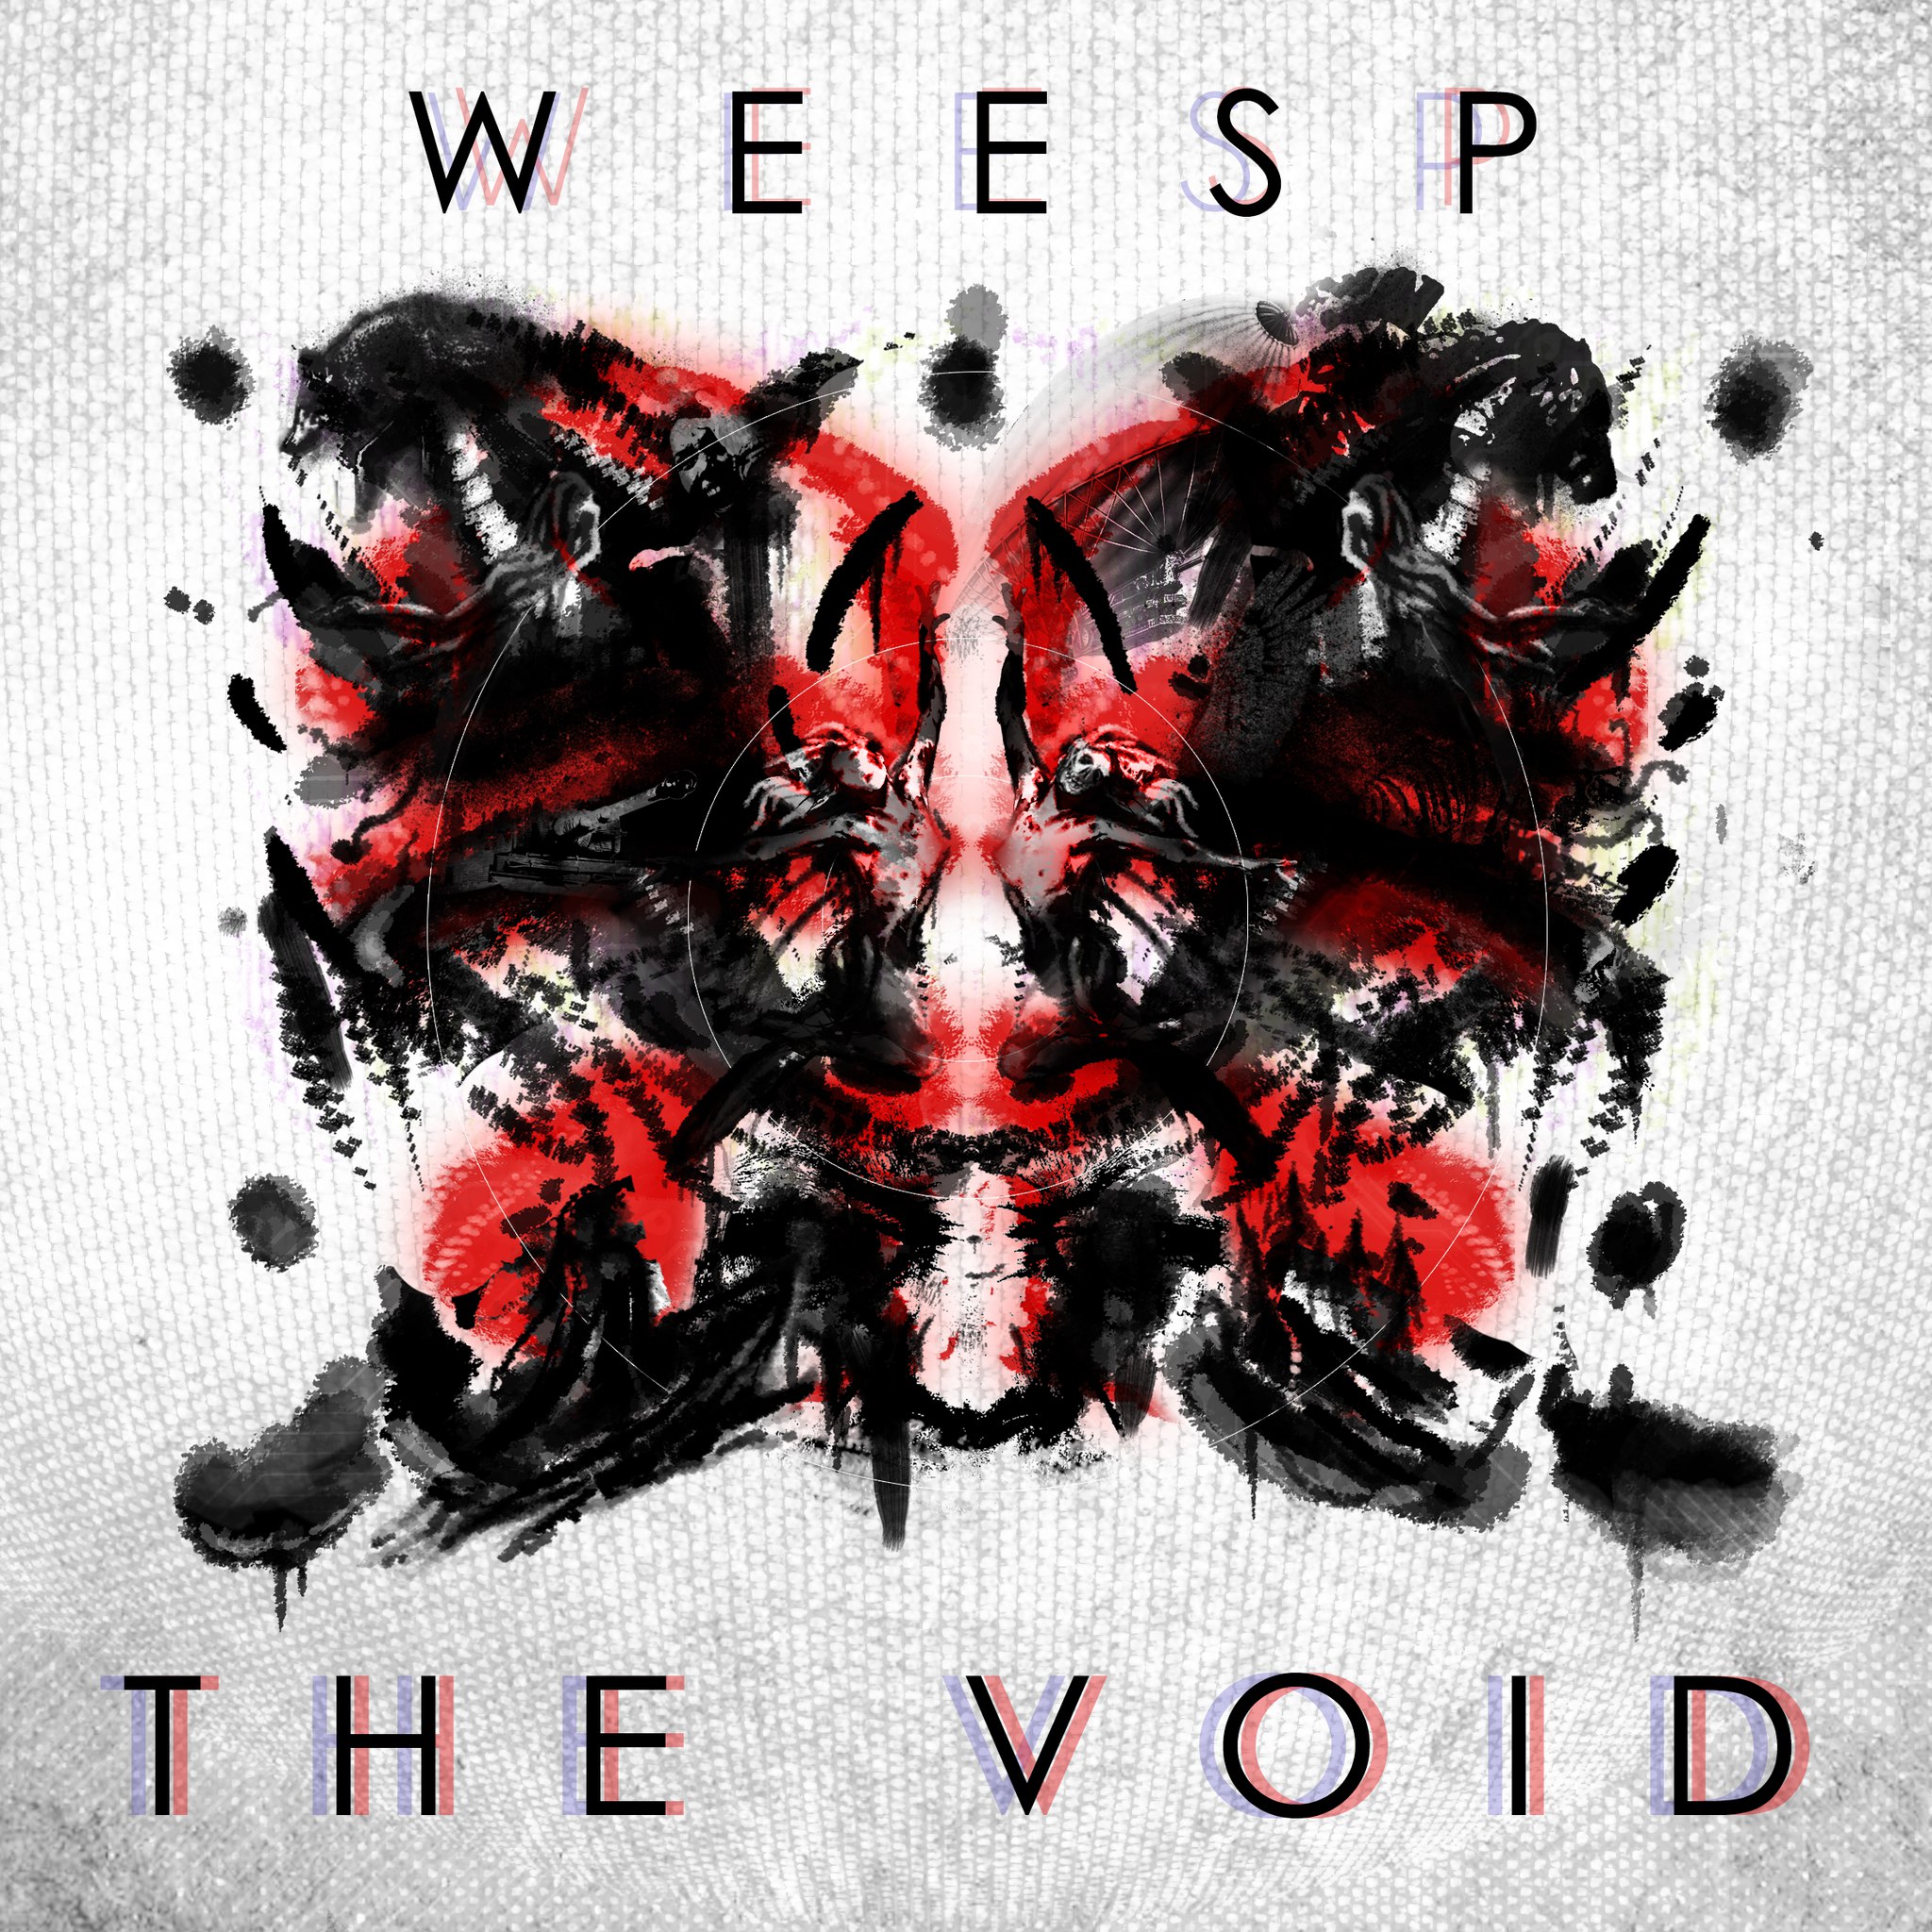 Weesp - The Void (2015) Album Info